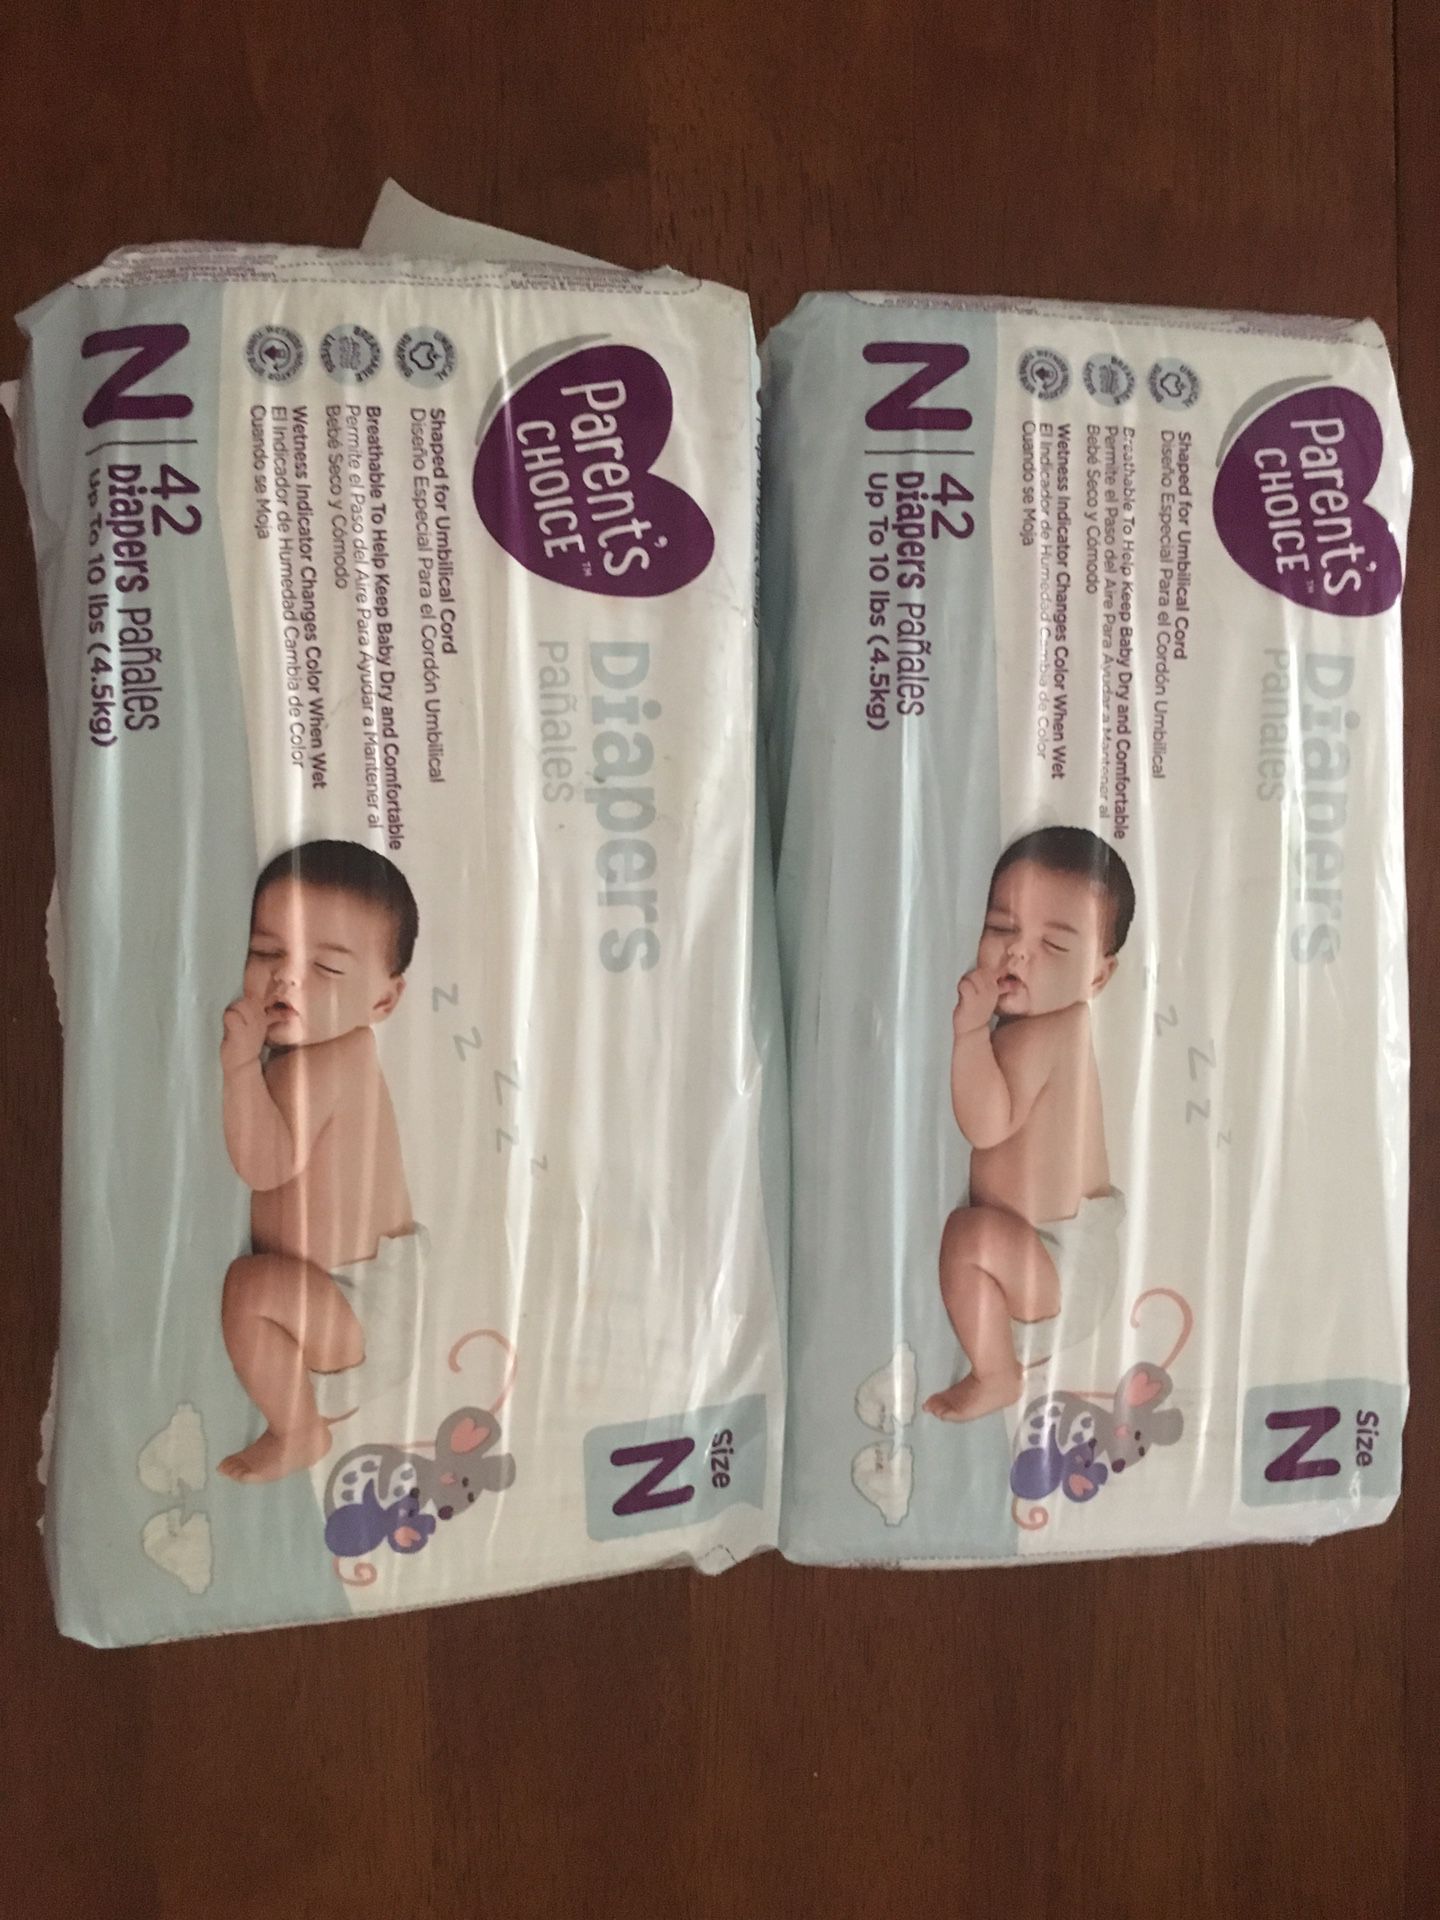 2 packs of newborn diapers